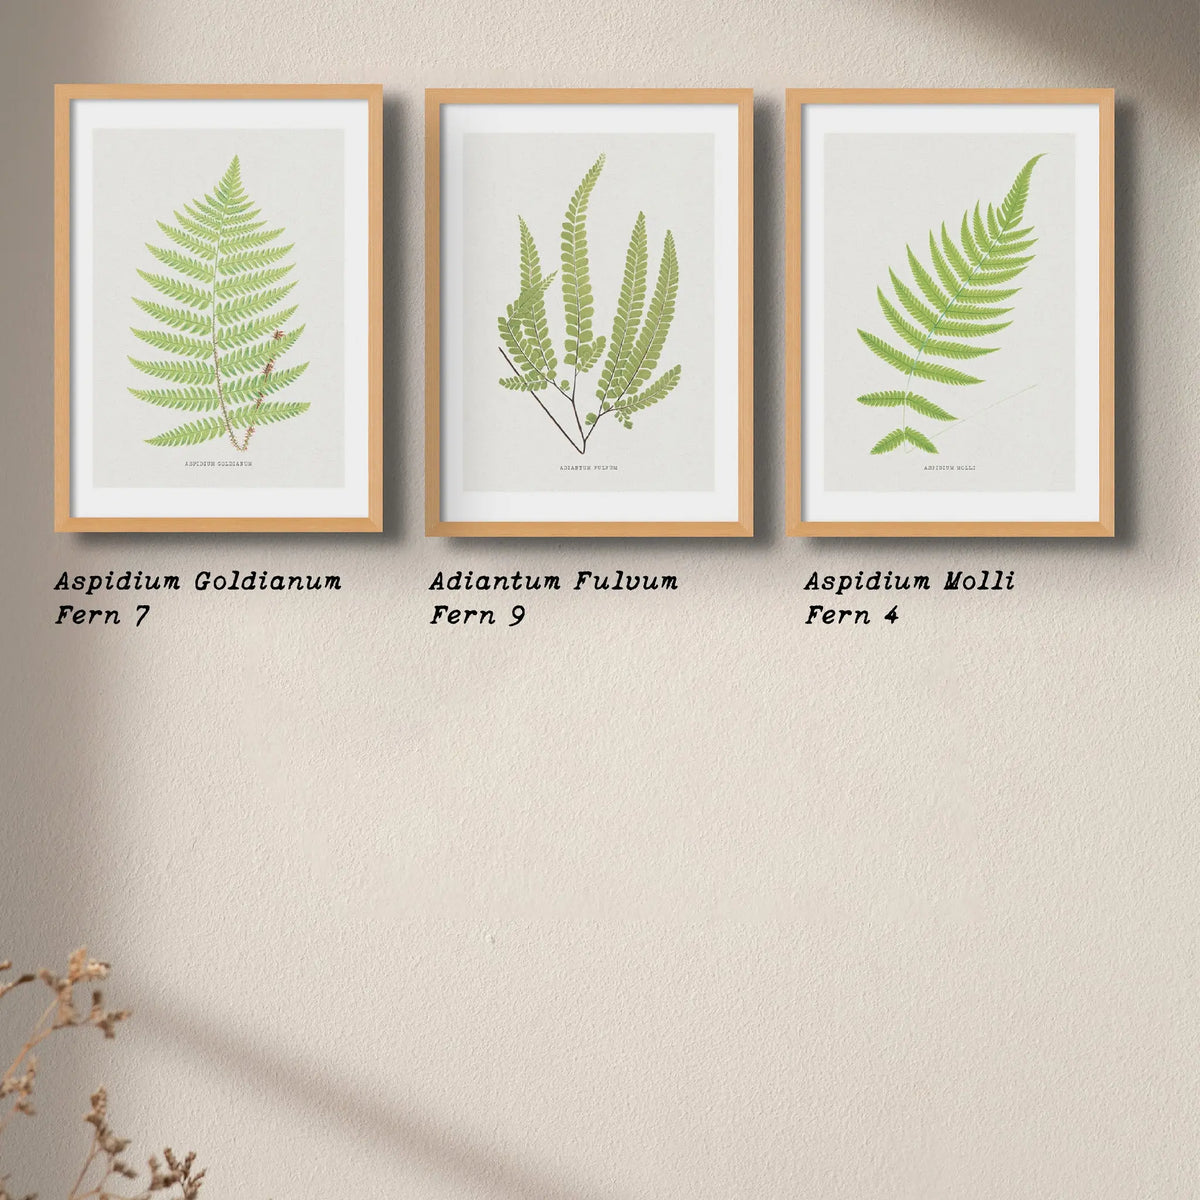 Aspidium Molle | Ferns Wall Art | Botanical Art Print - Unframed